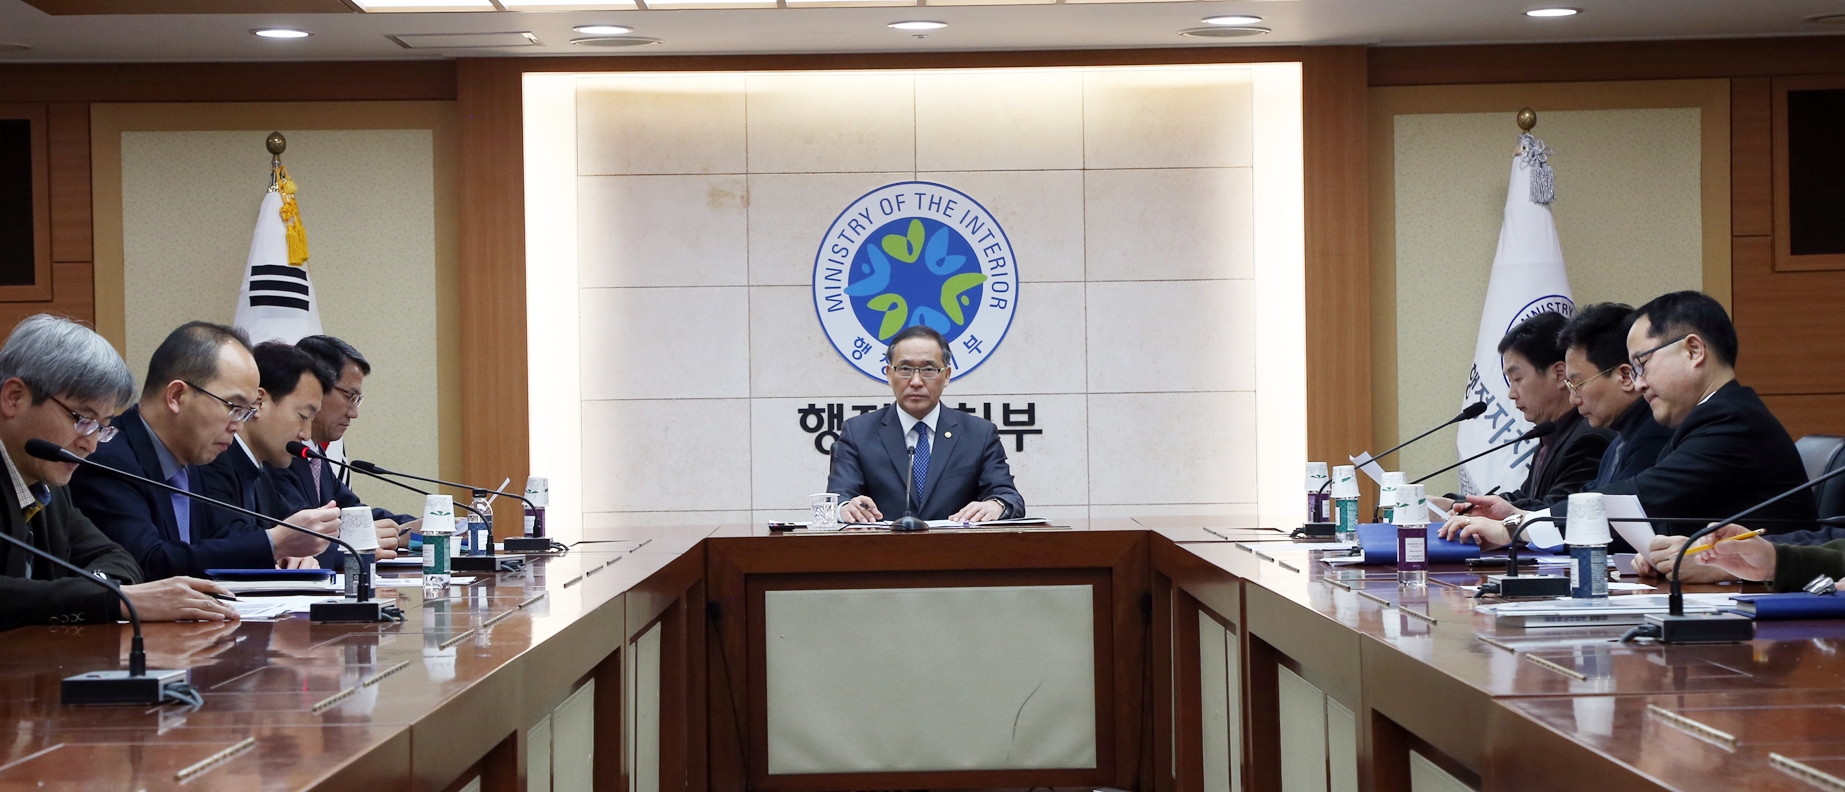 홍윤식 장관, 제4차 민중총궐기 집회 상황 점검